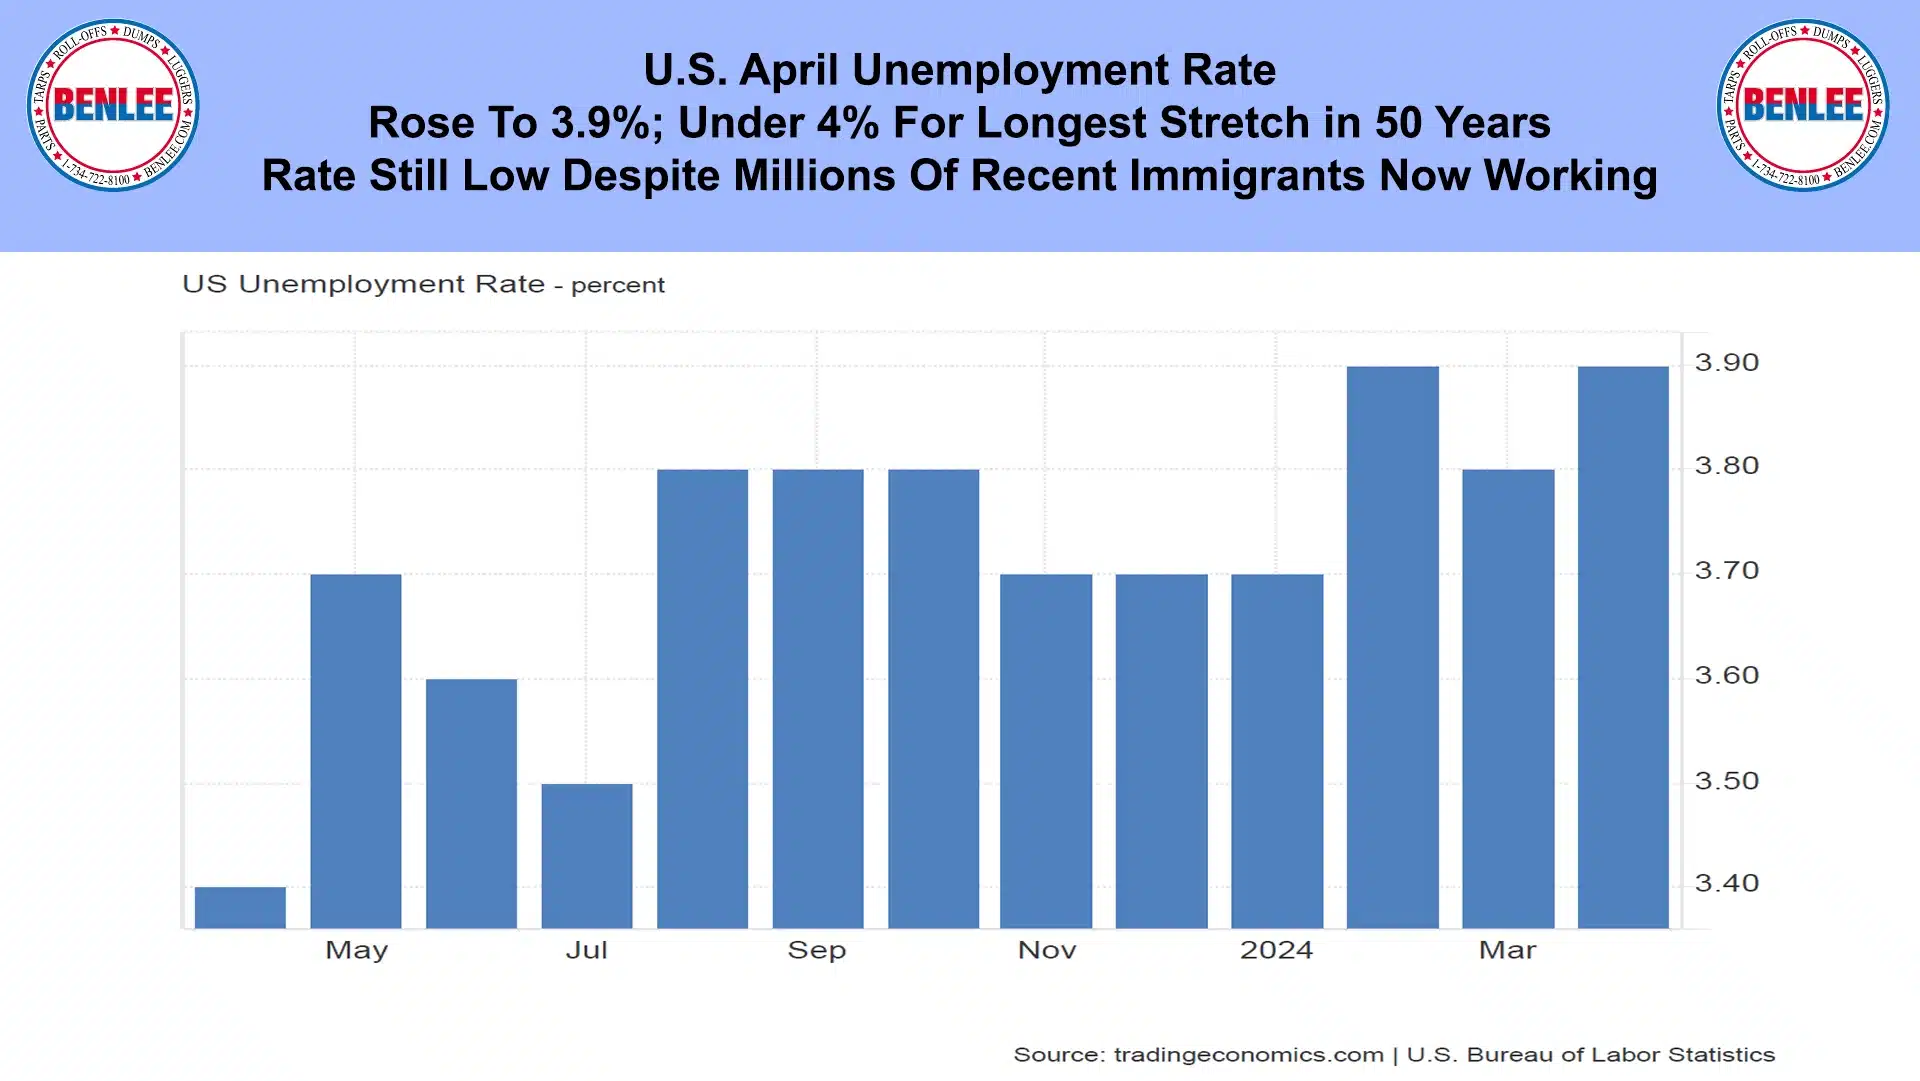 U.S. April Unemployment Rate